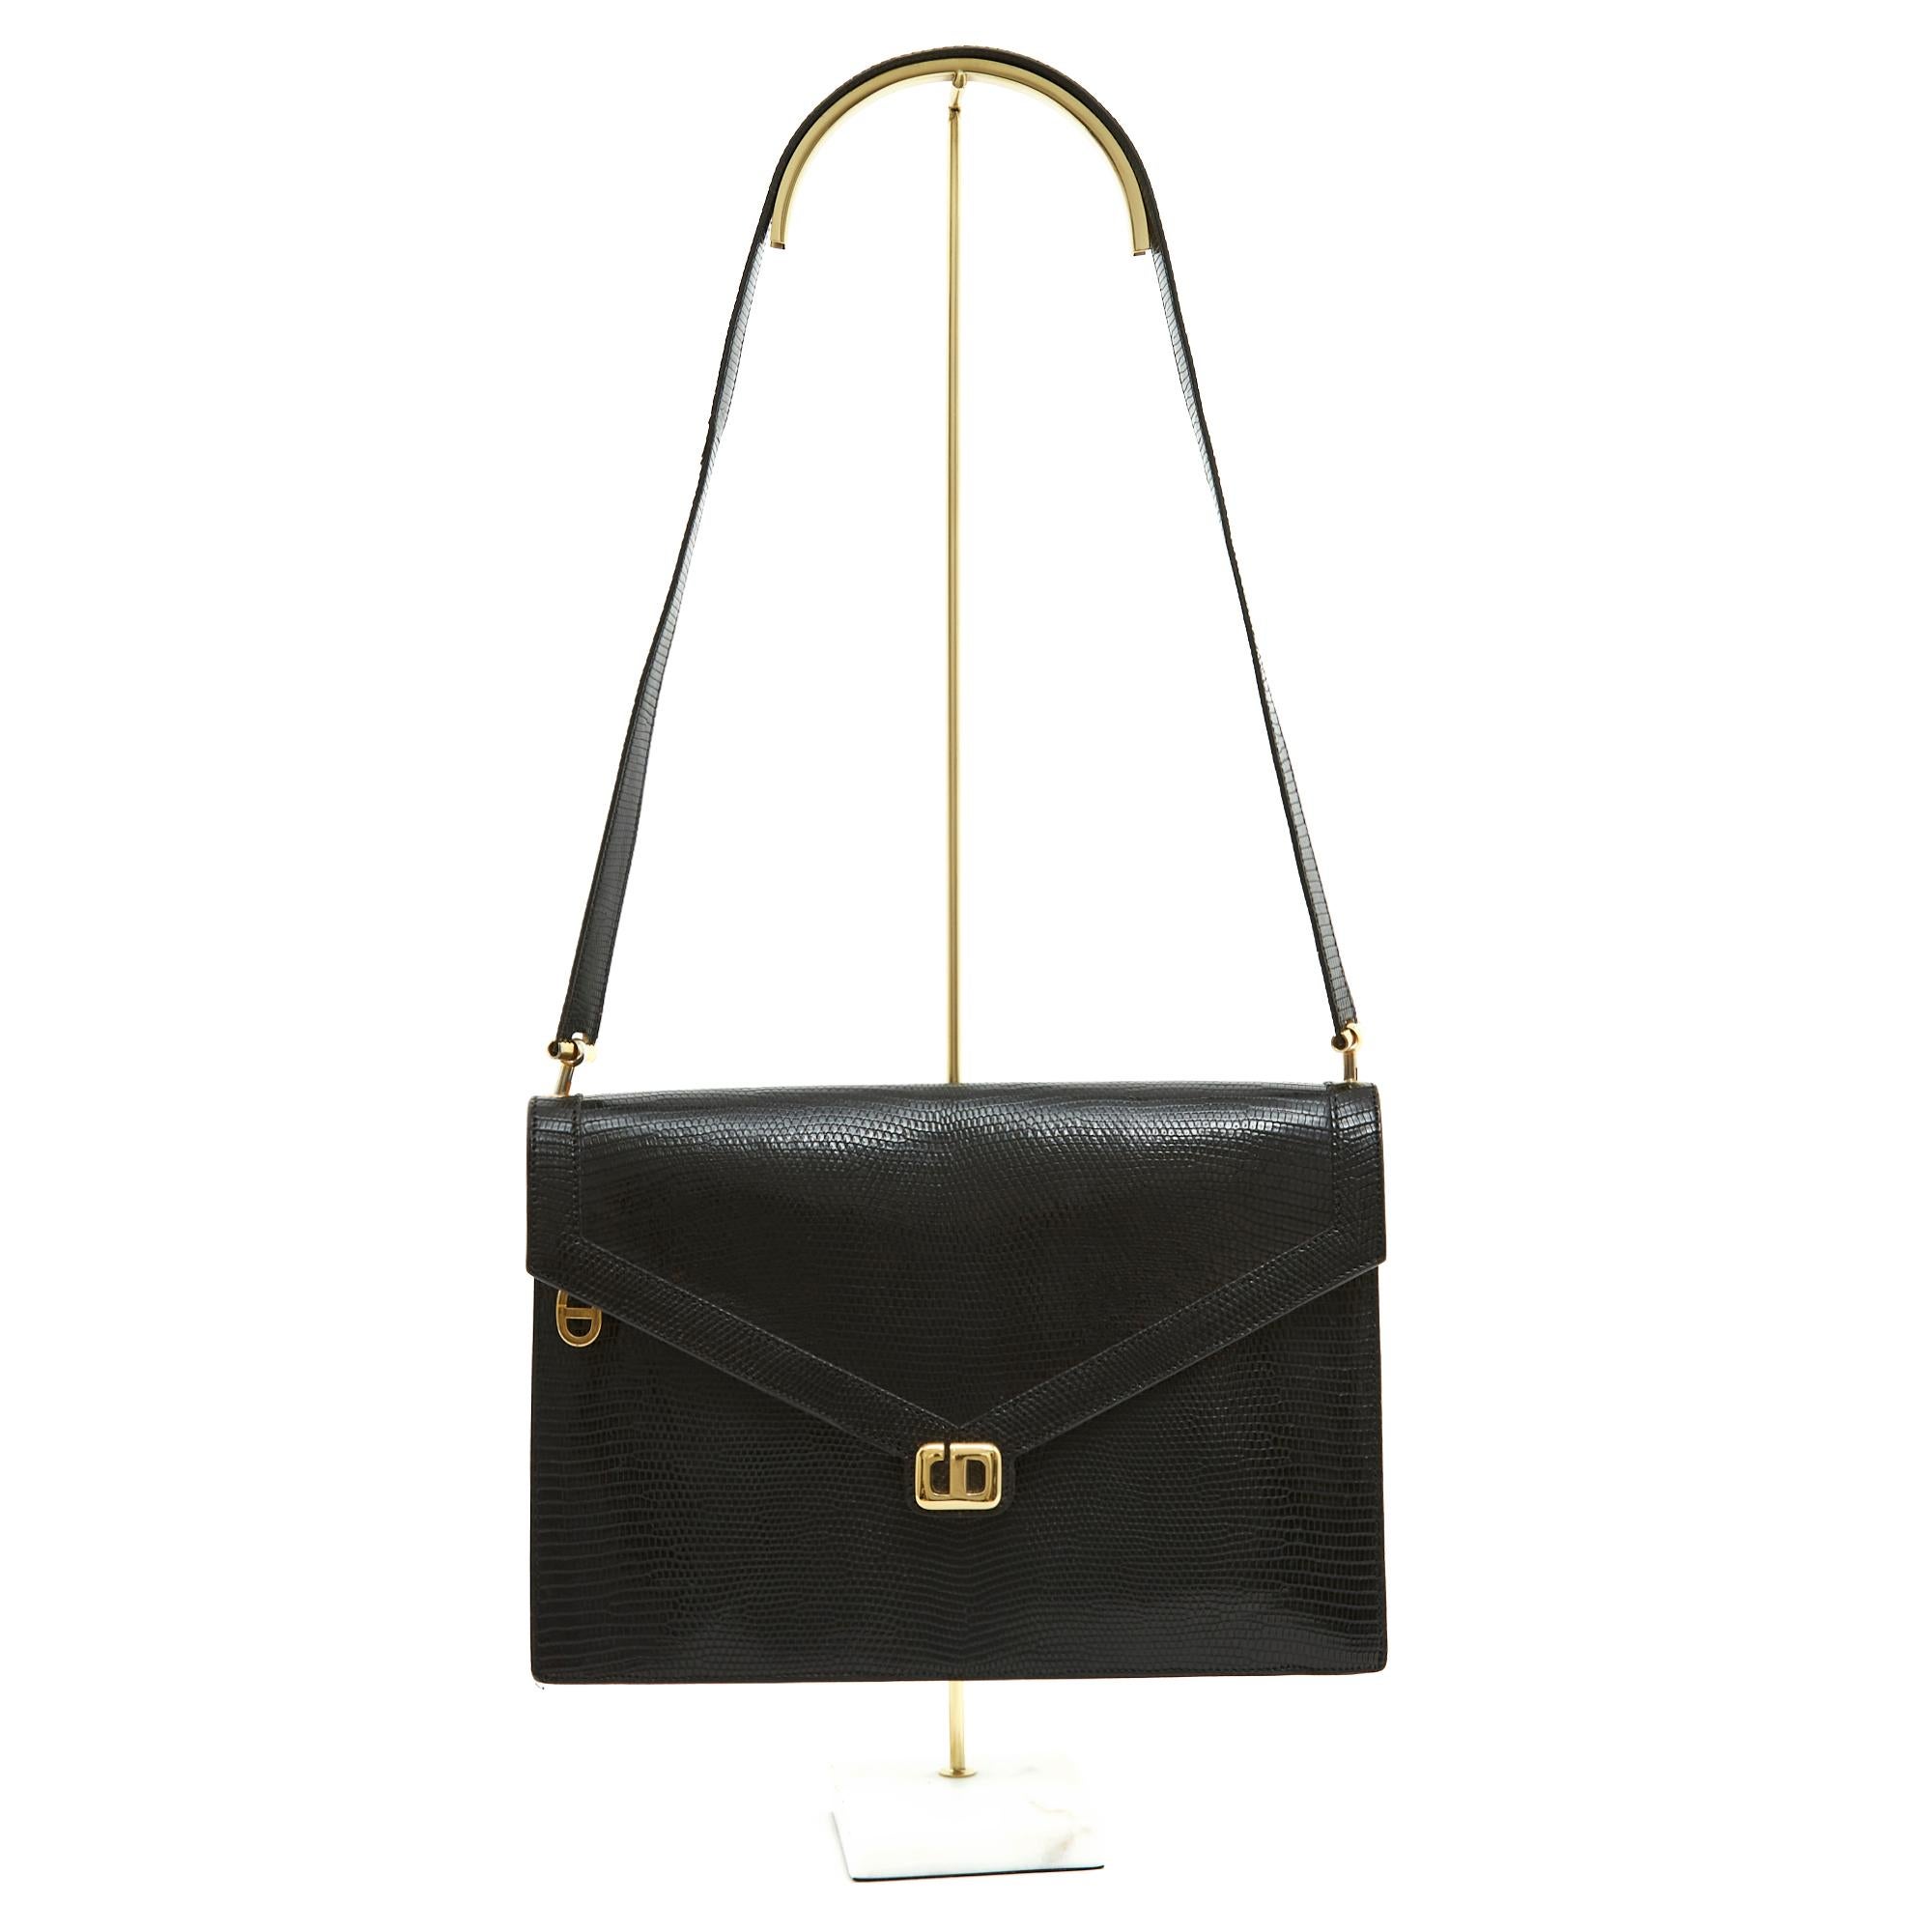 Christian Dior Tasche, bestehend aus einer kuvertförmigen Clutch aus schwarzer Eidechse, die mit einem Druckknopf unter dem Dior-Logo aus vergoldetem Metall verschlossen wird. Innen ist sie aus schwarzem Leder, mit einem kurzen, abnehmbaren